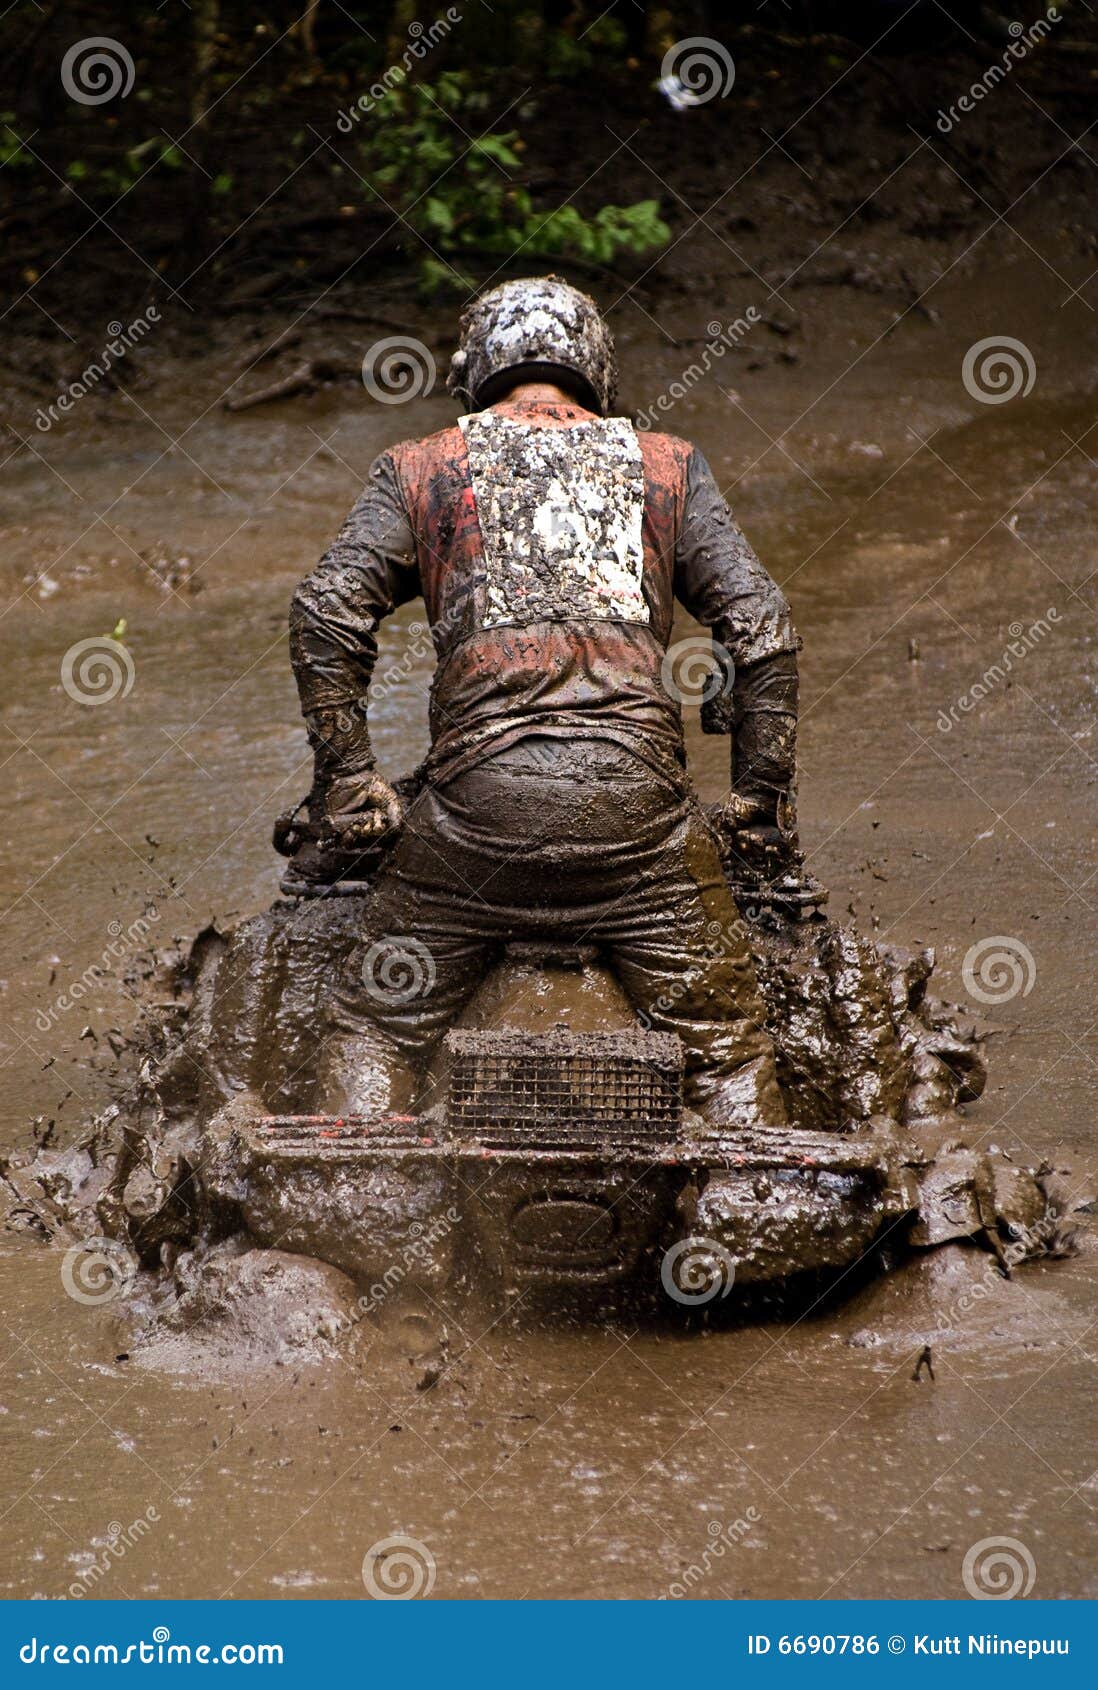 atv in the mud